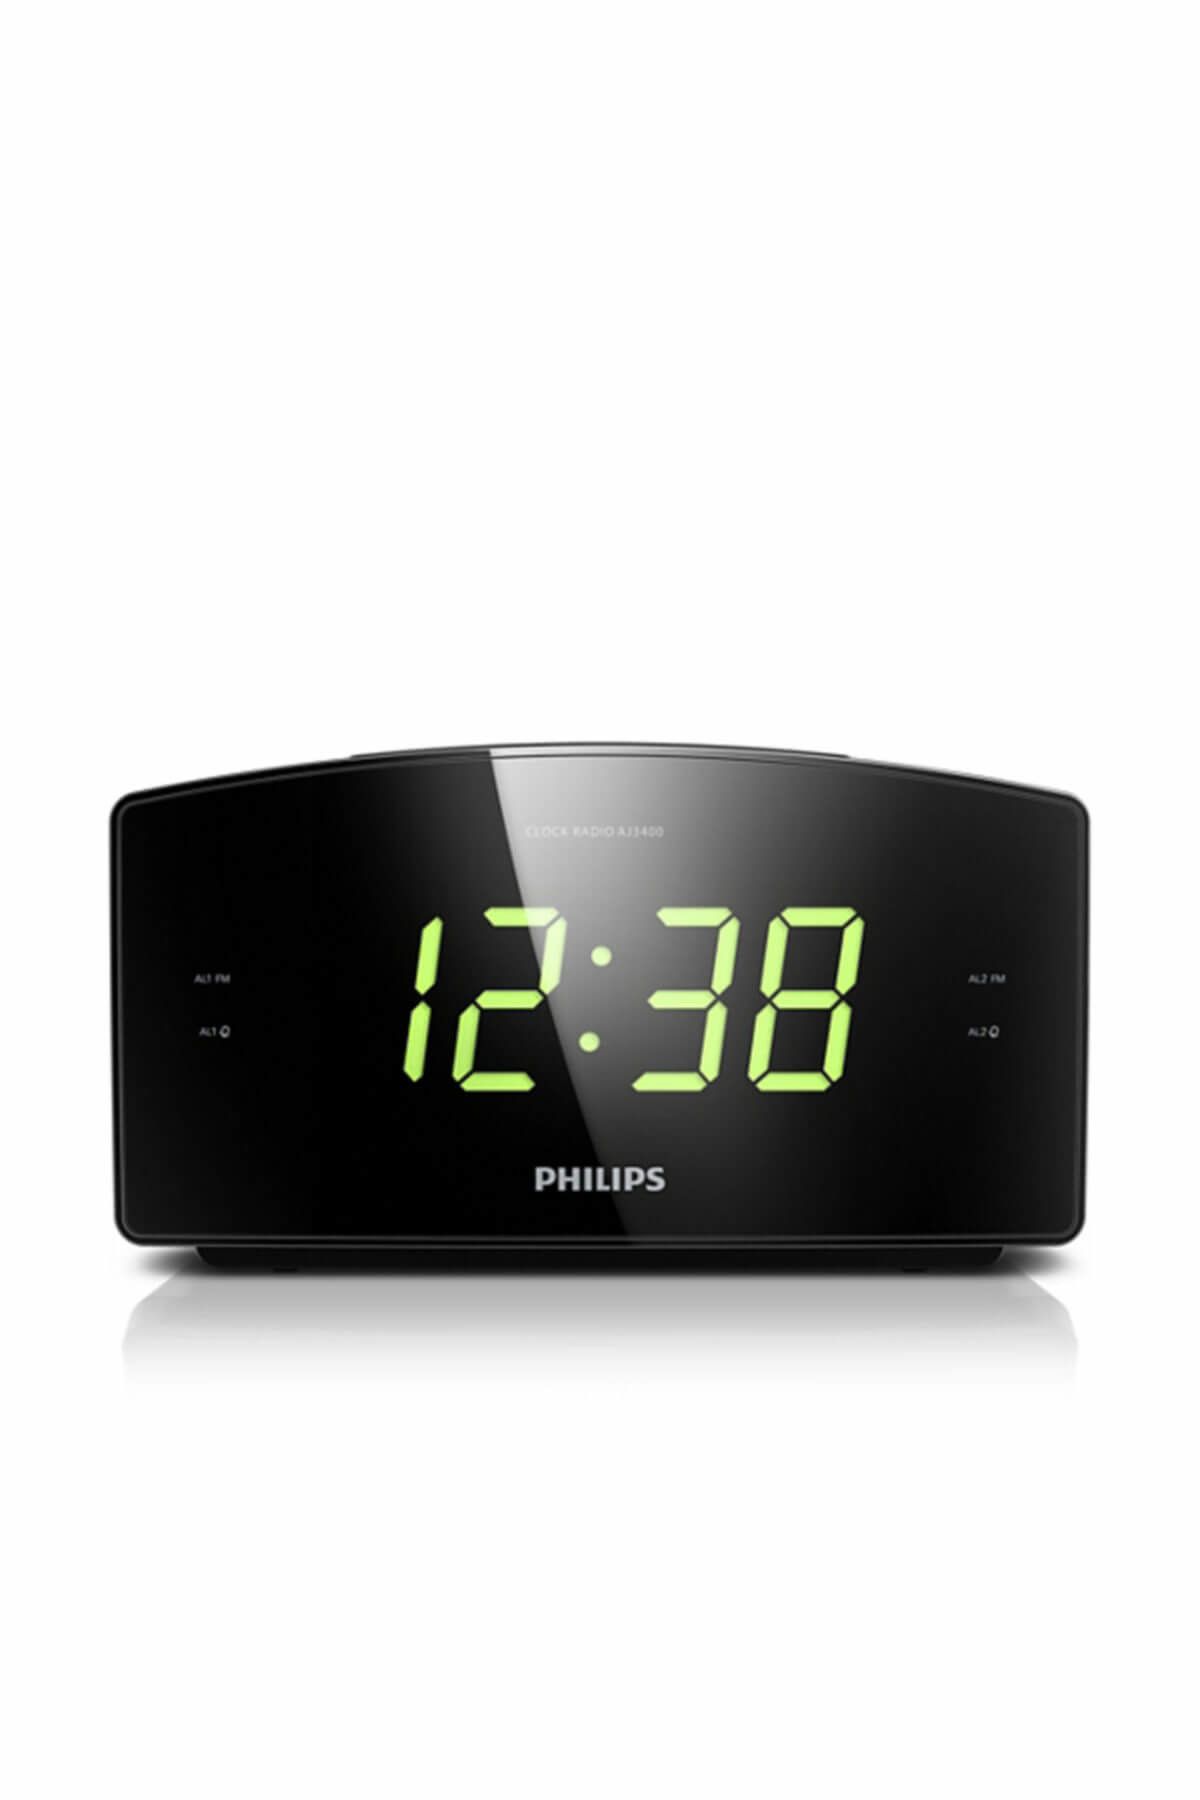 Philips AJ3400 Alarm ve Saatli Dijital FM Radyo